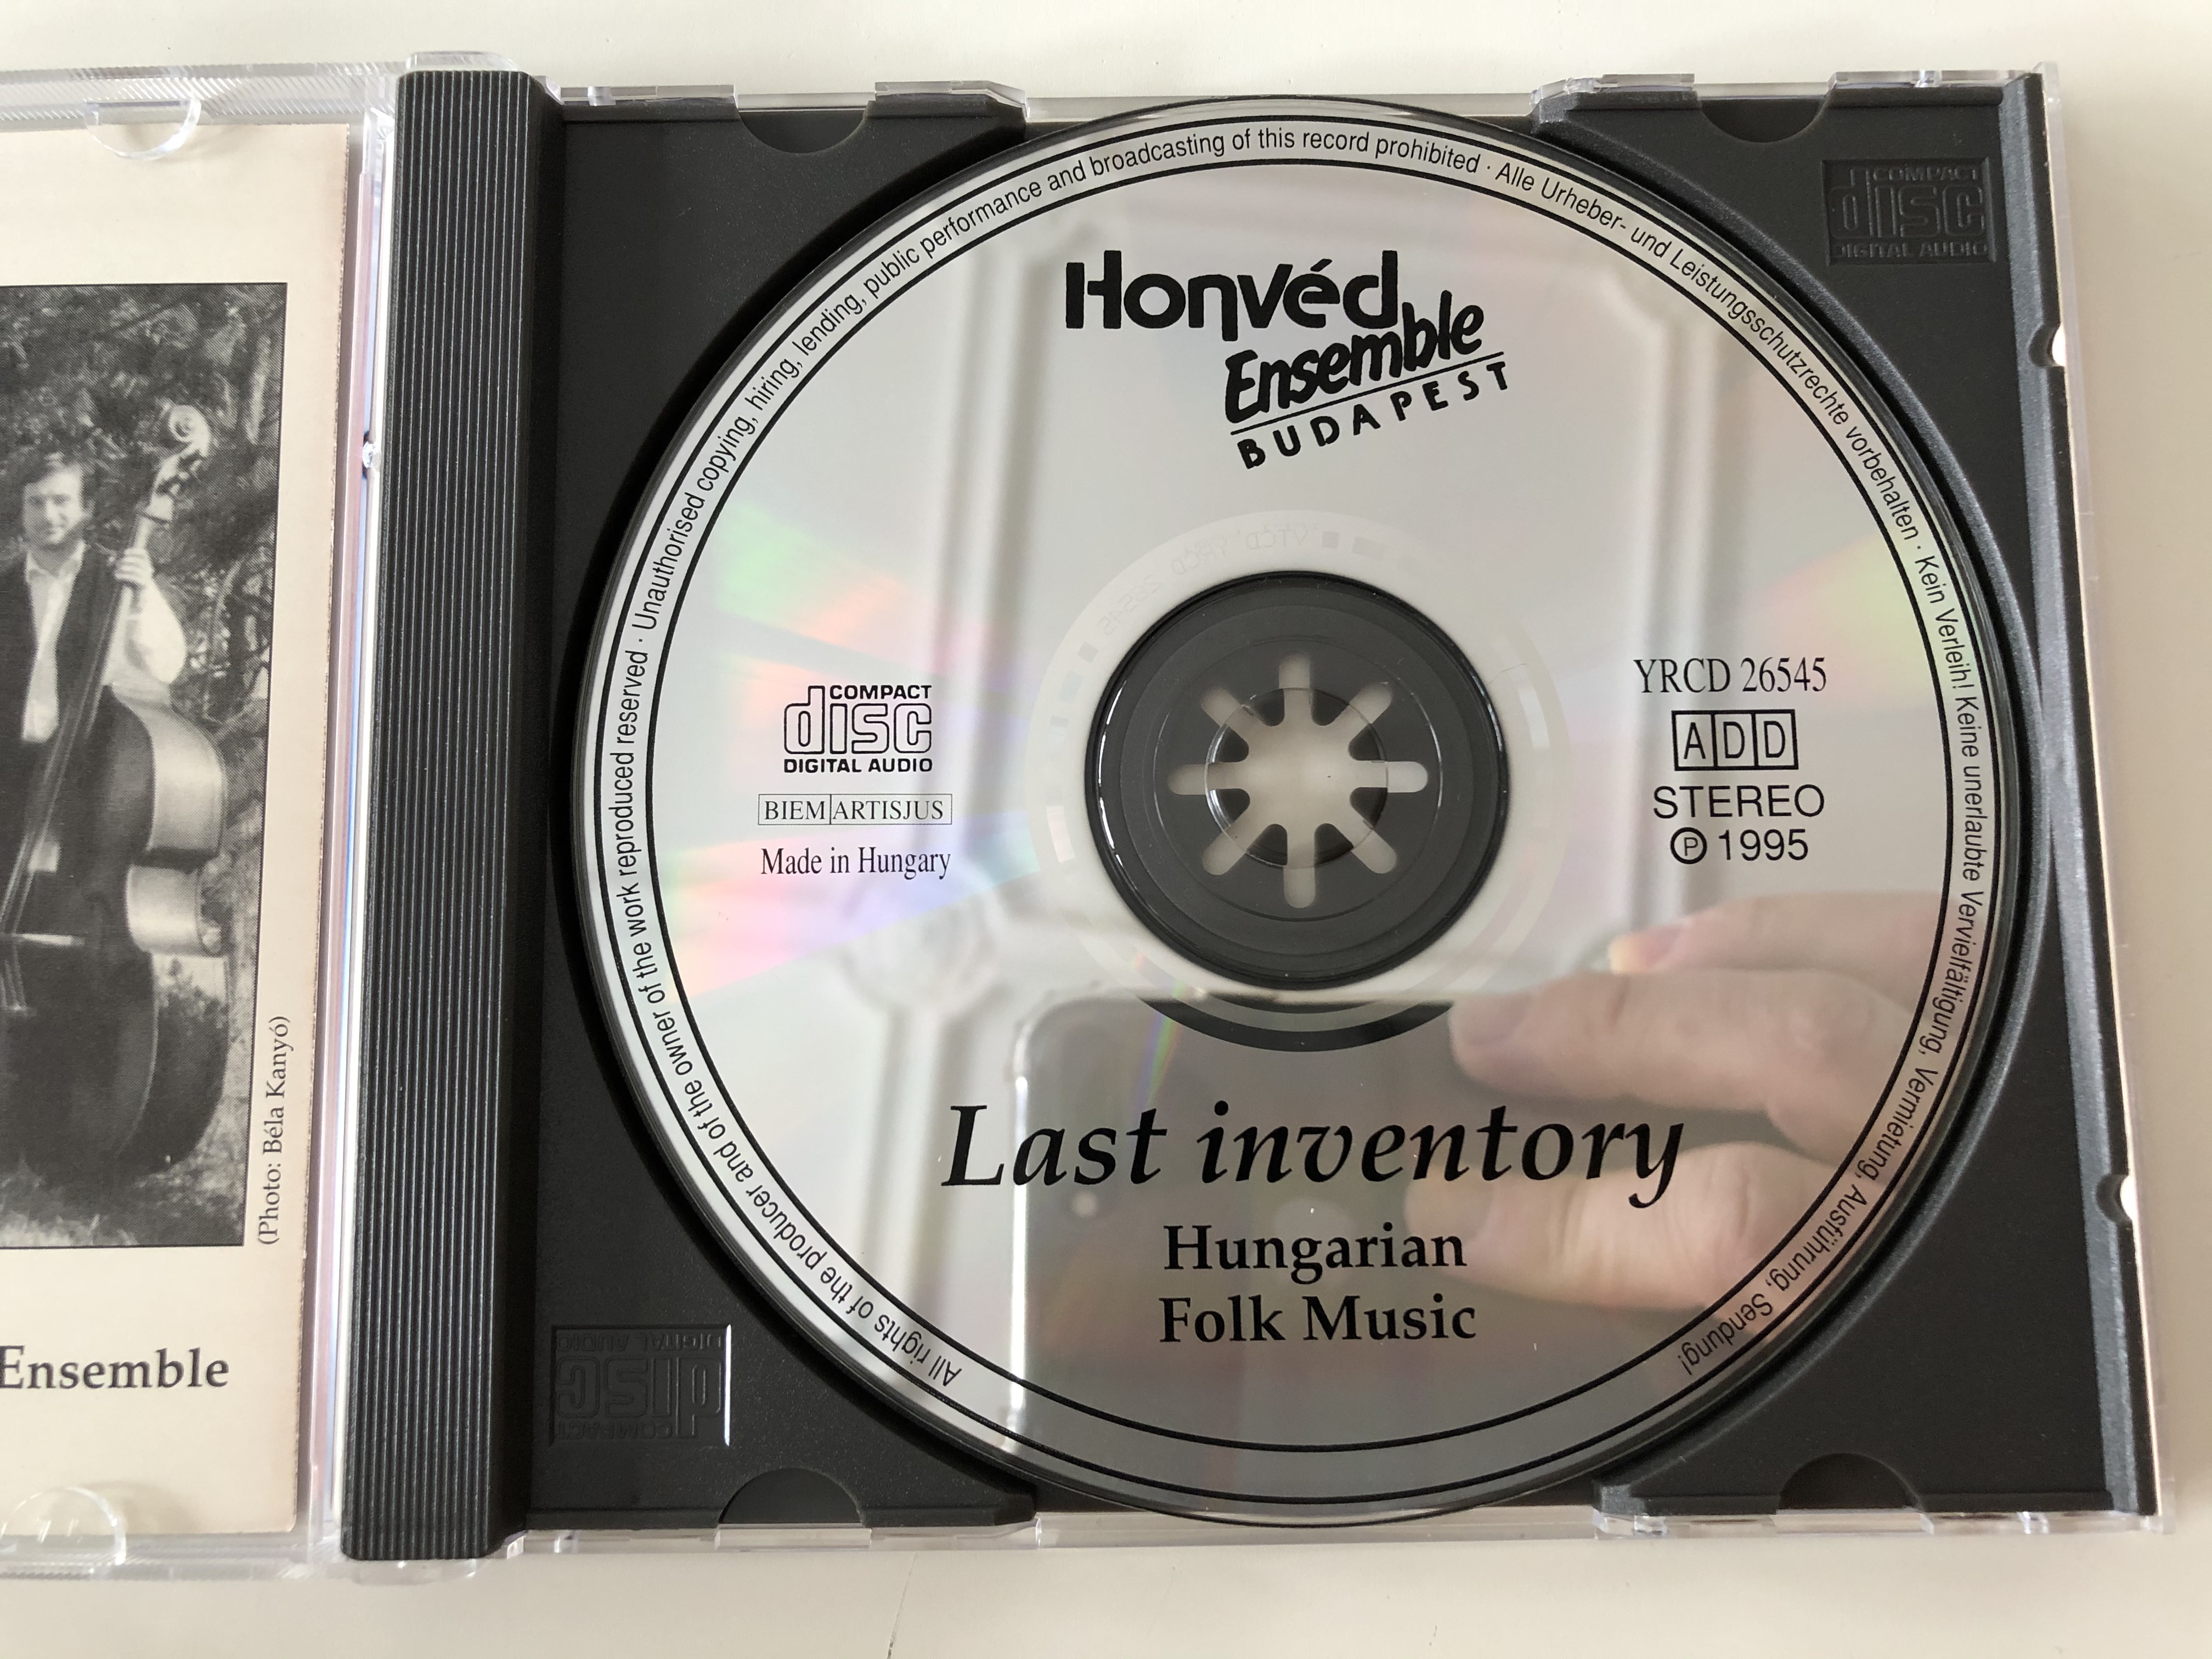 utols-lelt-r-magyar-nepzene-last-inventory-hungarian-folk-music-honv-d-ensemble-budapest-audio-cd-1995-stereo-yrcd-26545-3-.jpg